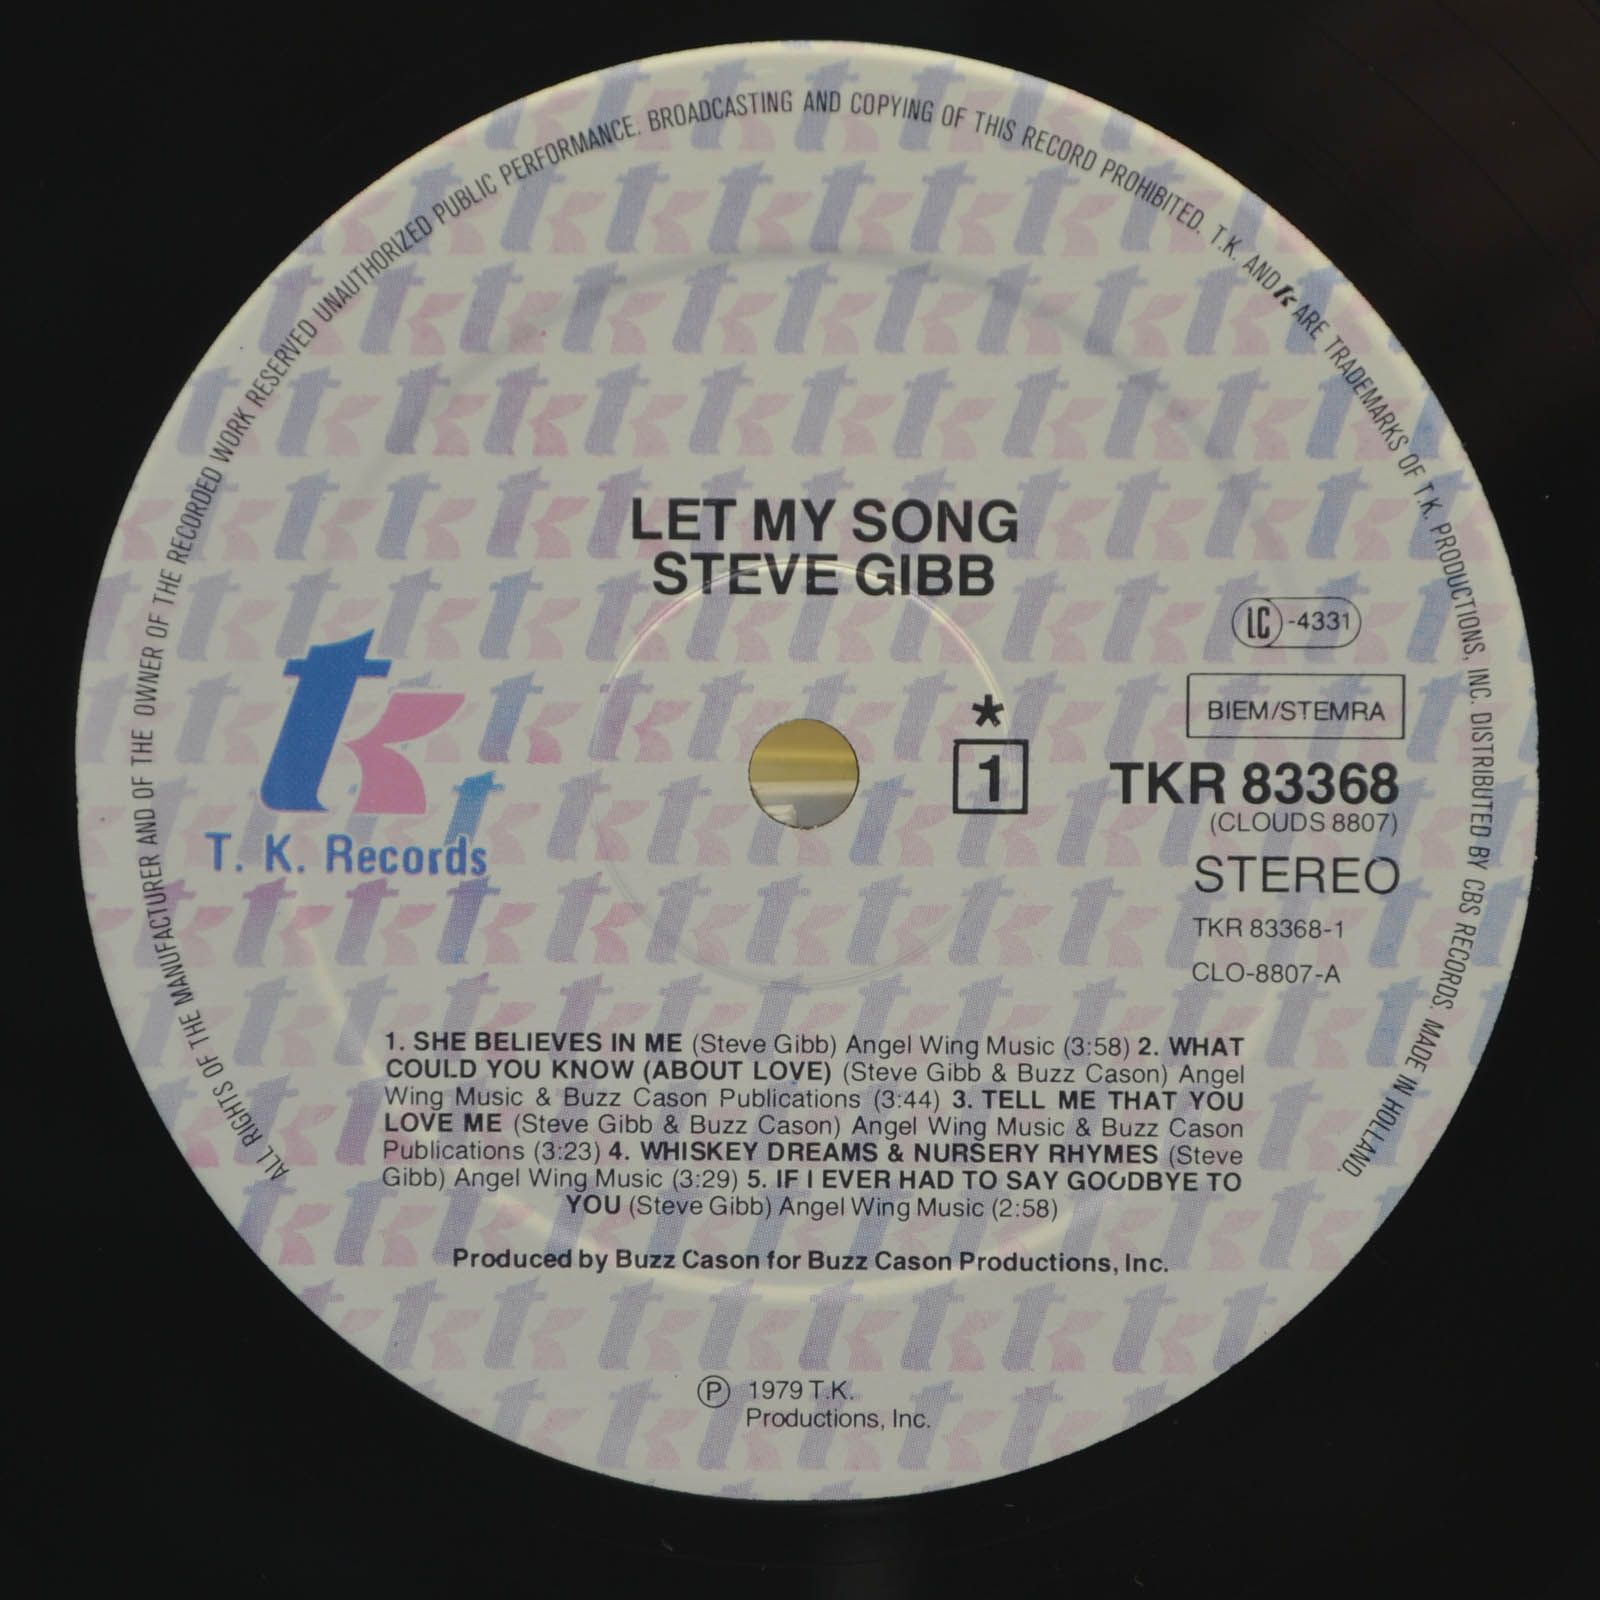 Steve Gibb — Let My Song, 1979